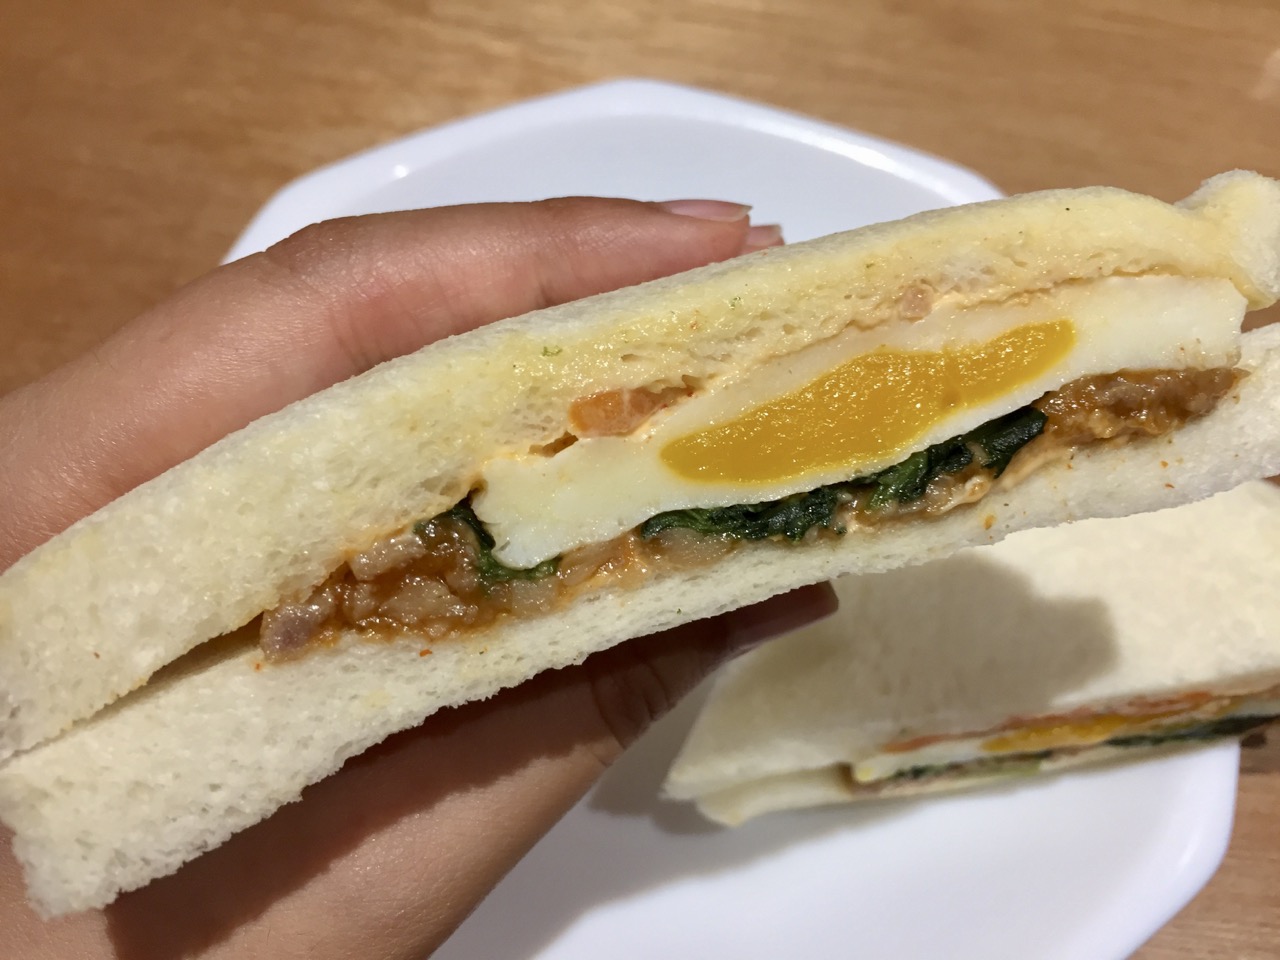 ピビンバがサンドイッチに?! ファミリーマートの「ビビンバ風サンドイッチ」を実食レビュー! #ファミマ